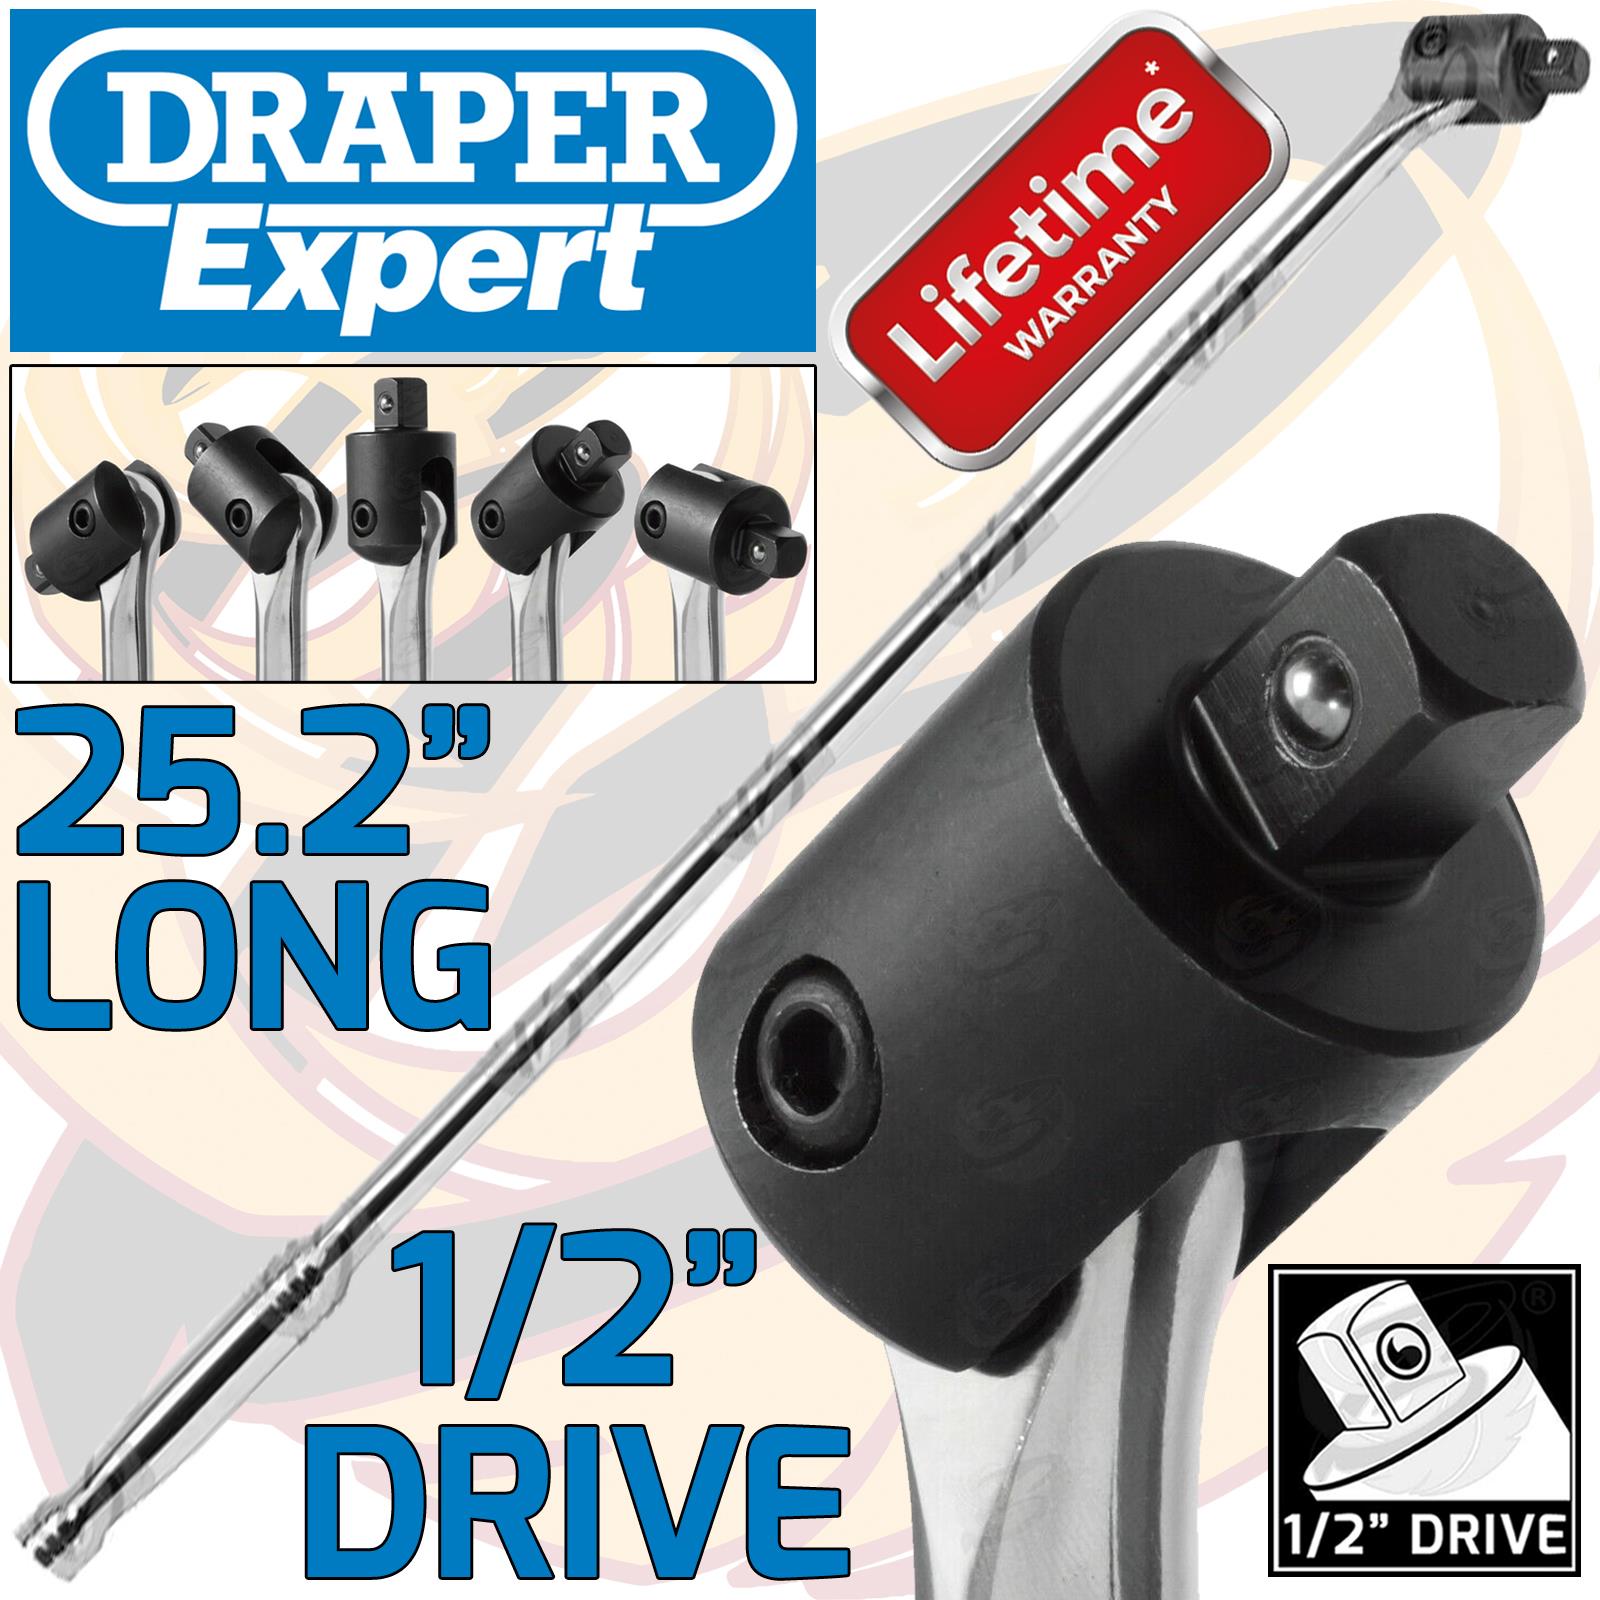 DRAPER 1/2" DRIVE 24" LONG BREAKER BAR